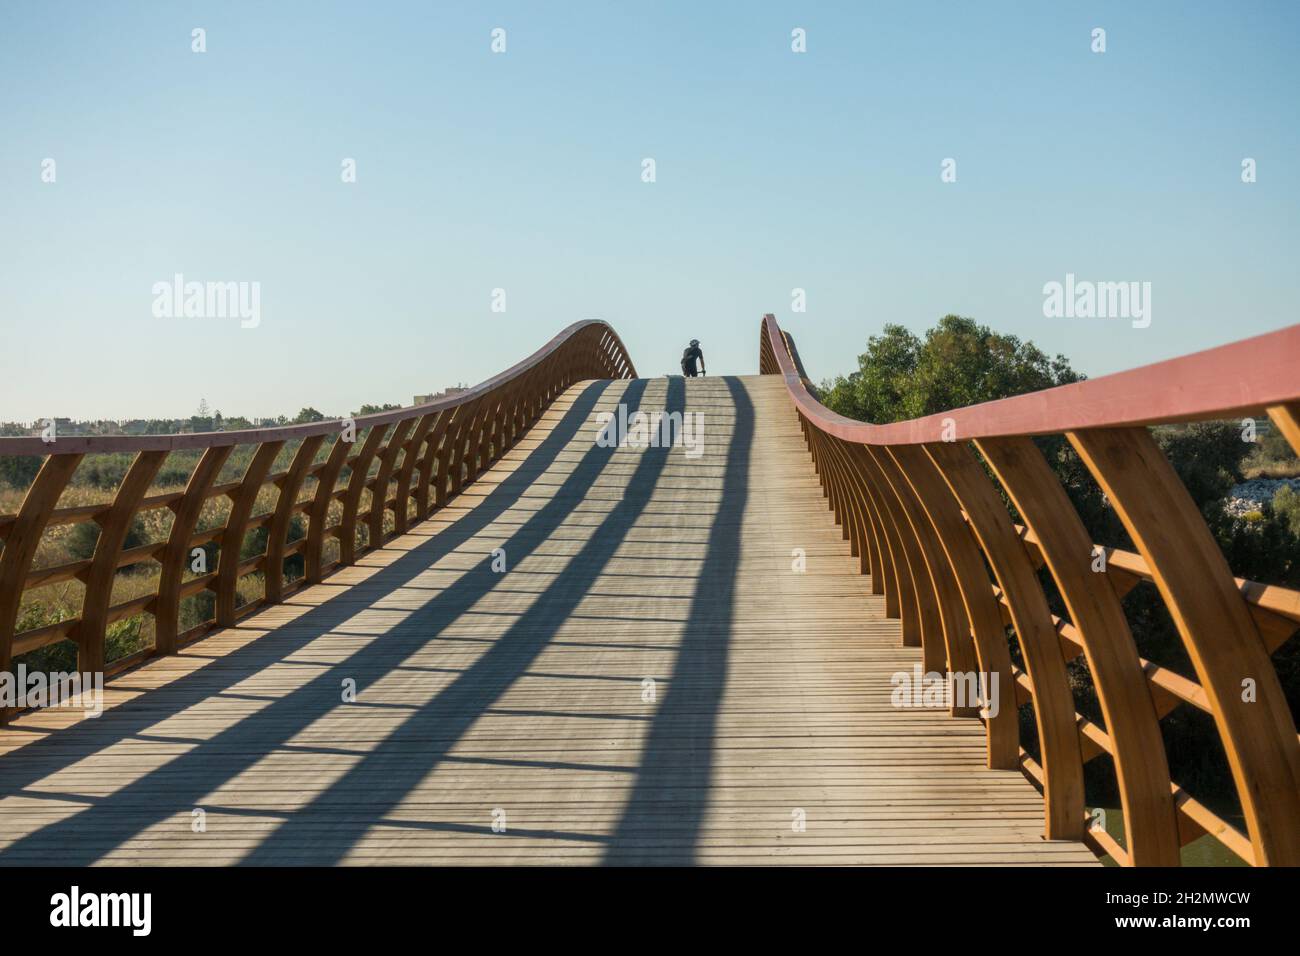 Passerella in legno, passerella ponte, alla riserva naturale di Guadalhorce, che collega le spiagge della Costa del Sol, Malaga, Andalusia, Spagna. Foto Stock